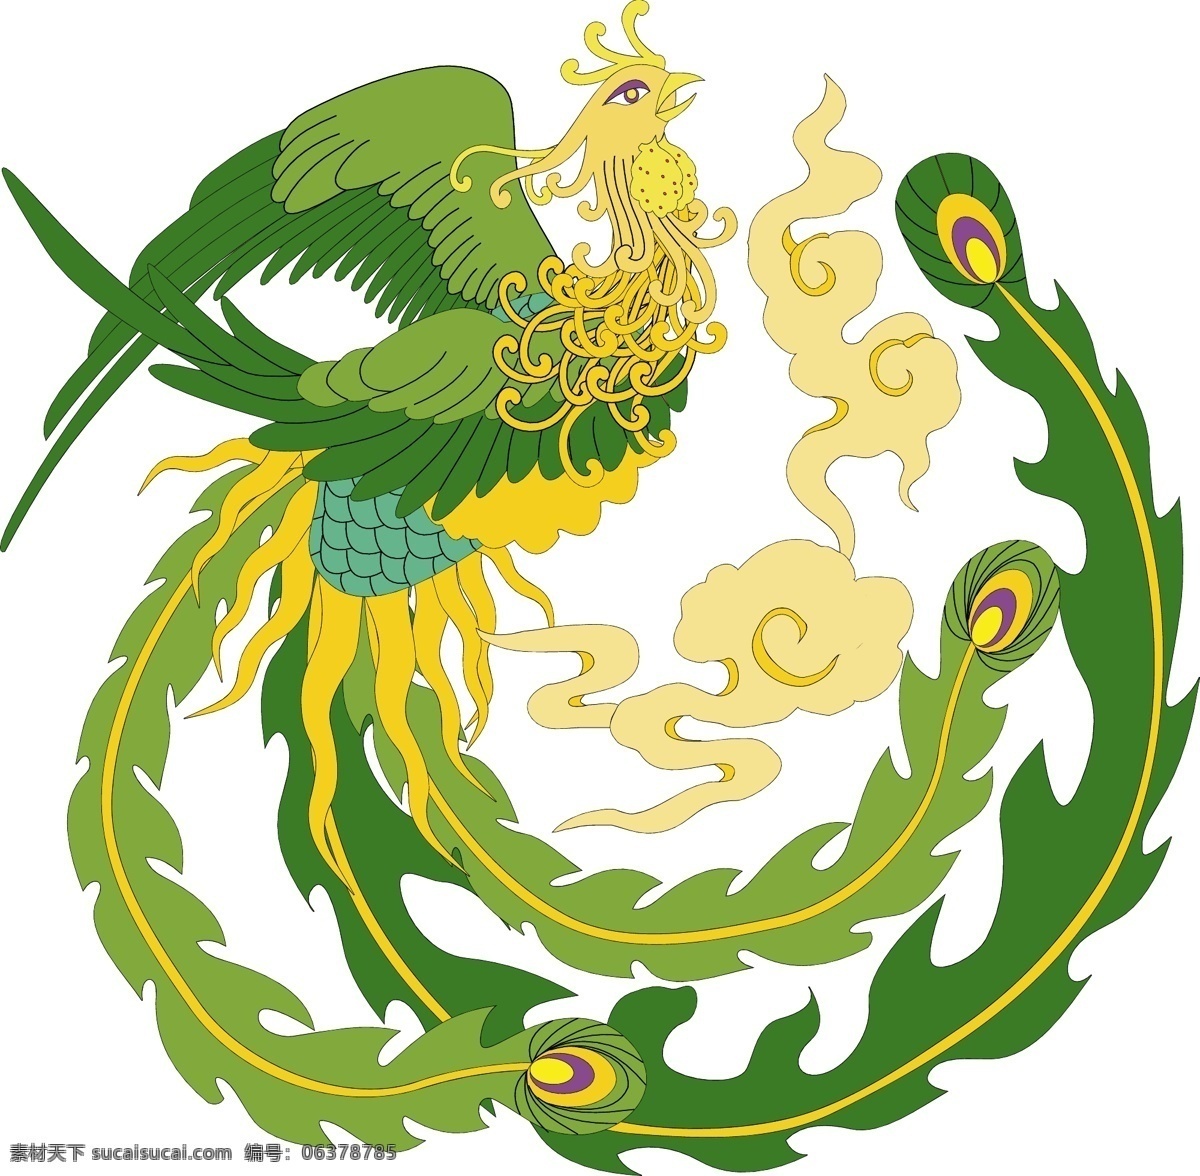 橄榄绿色凤凰 美丽的凤凰 百鸟之王 吉祥神鸟 中国 传统 龙凤 图案 传统文化 文化艺术 矢量